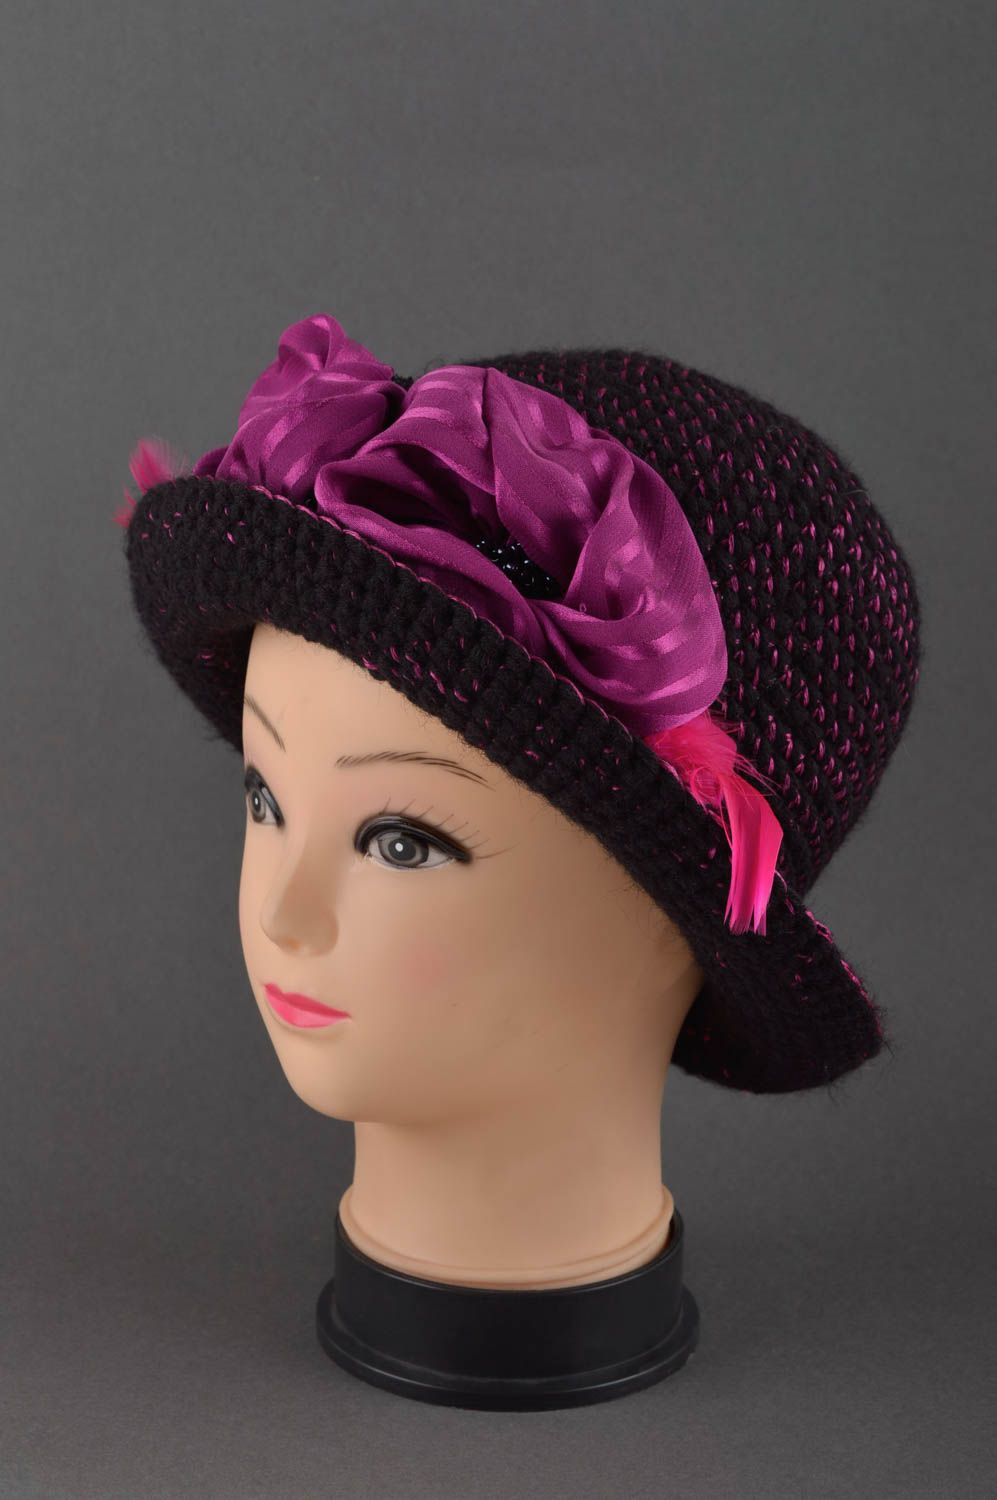 Женская шапка ручной работы головной убор зимняя шапка цвета фуксии с шелком фото 1